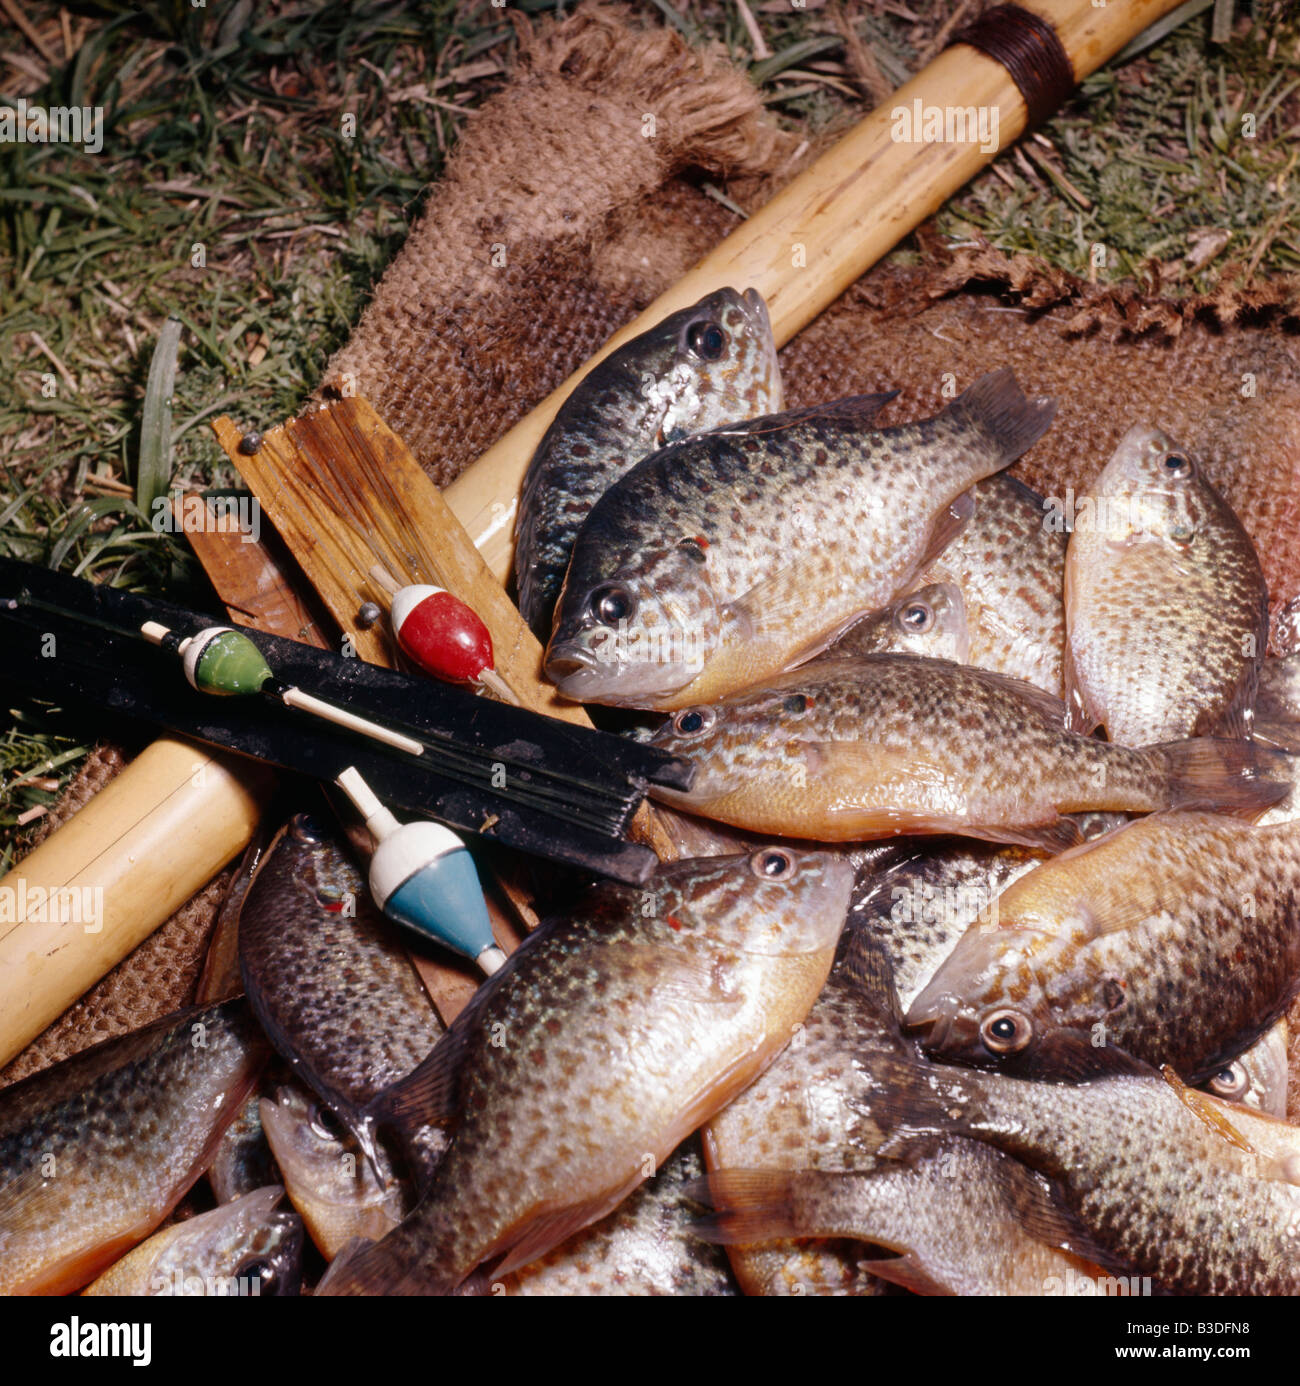 Peche de 2 heures sur onu Etang de Sologne Questa immagine mostra il risultato di due ore di pesca nel lago di Sologne Francia Gemeiner S Foto Stock